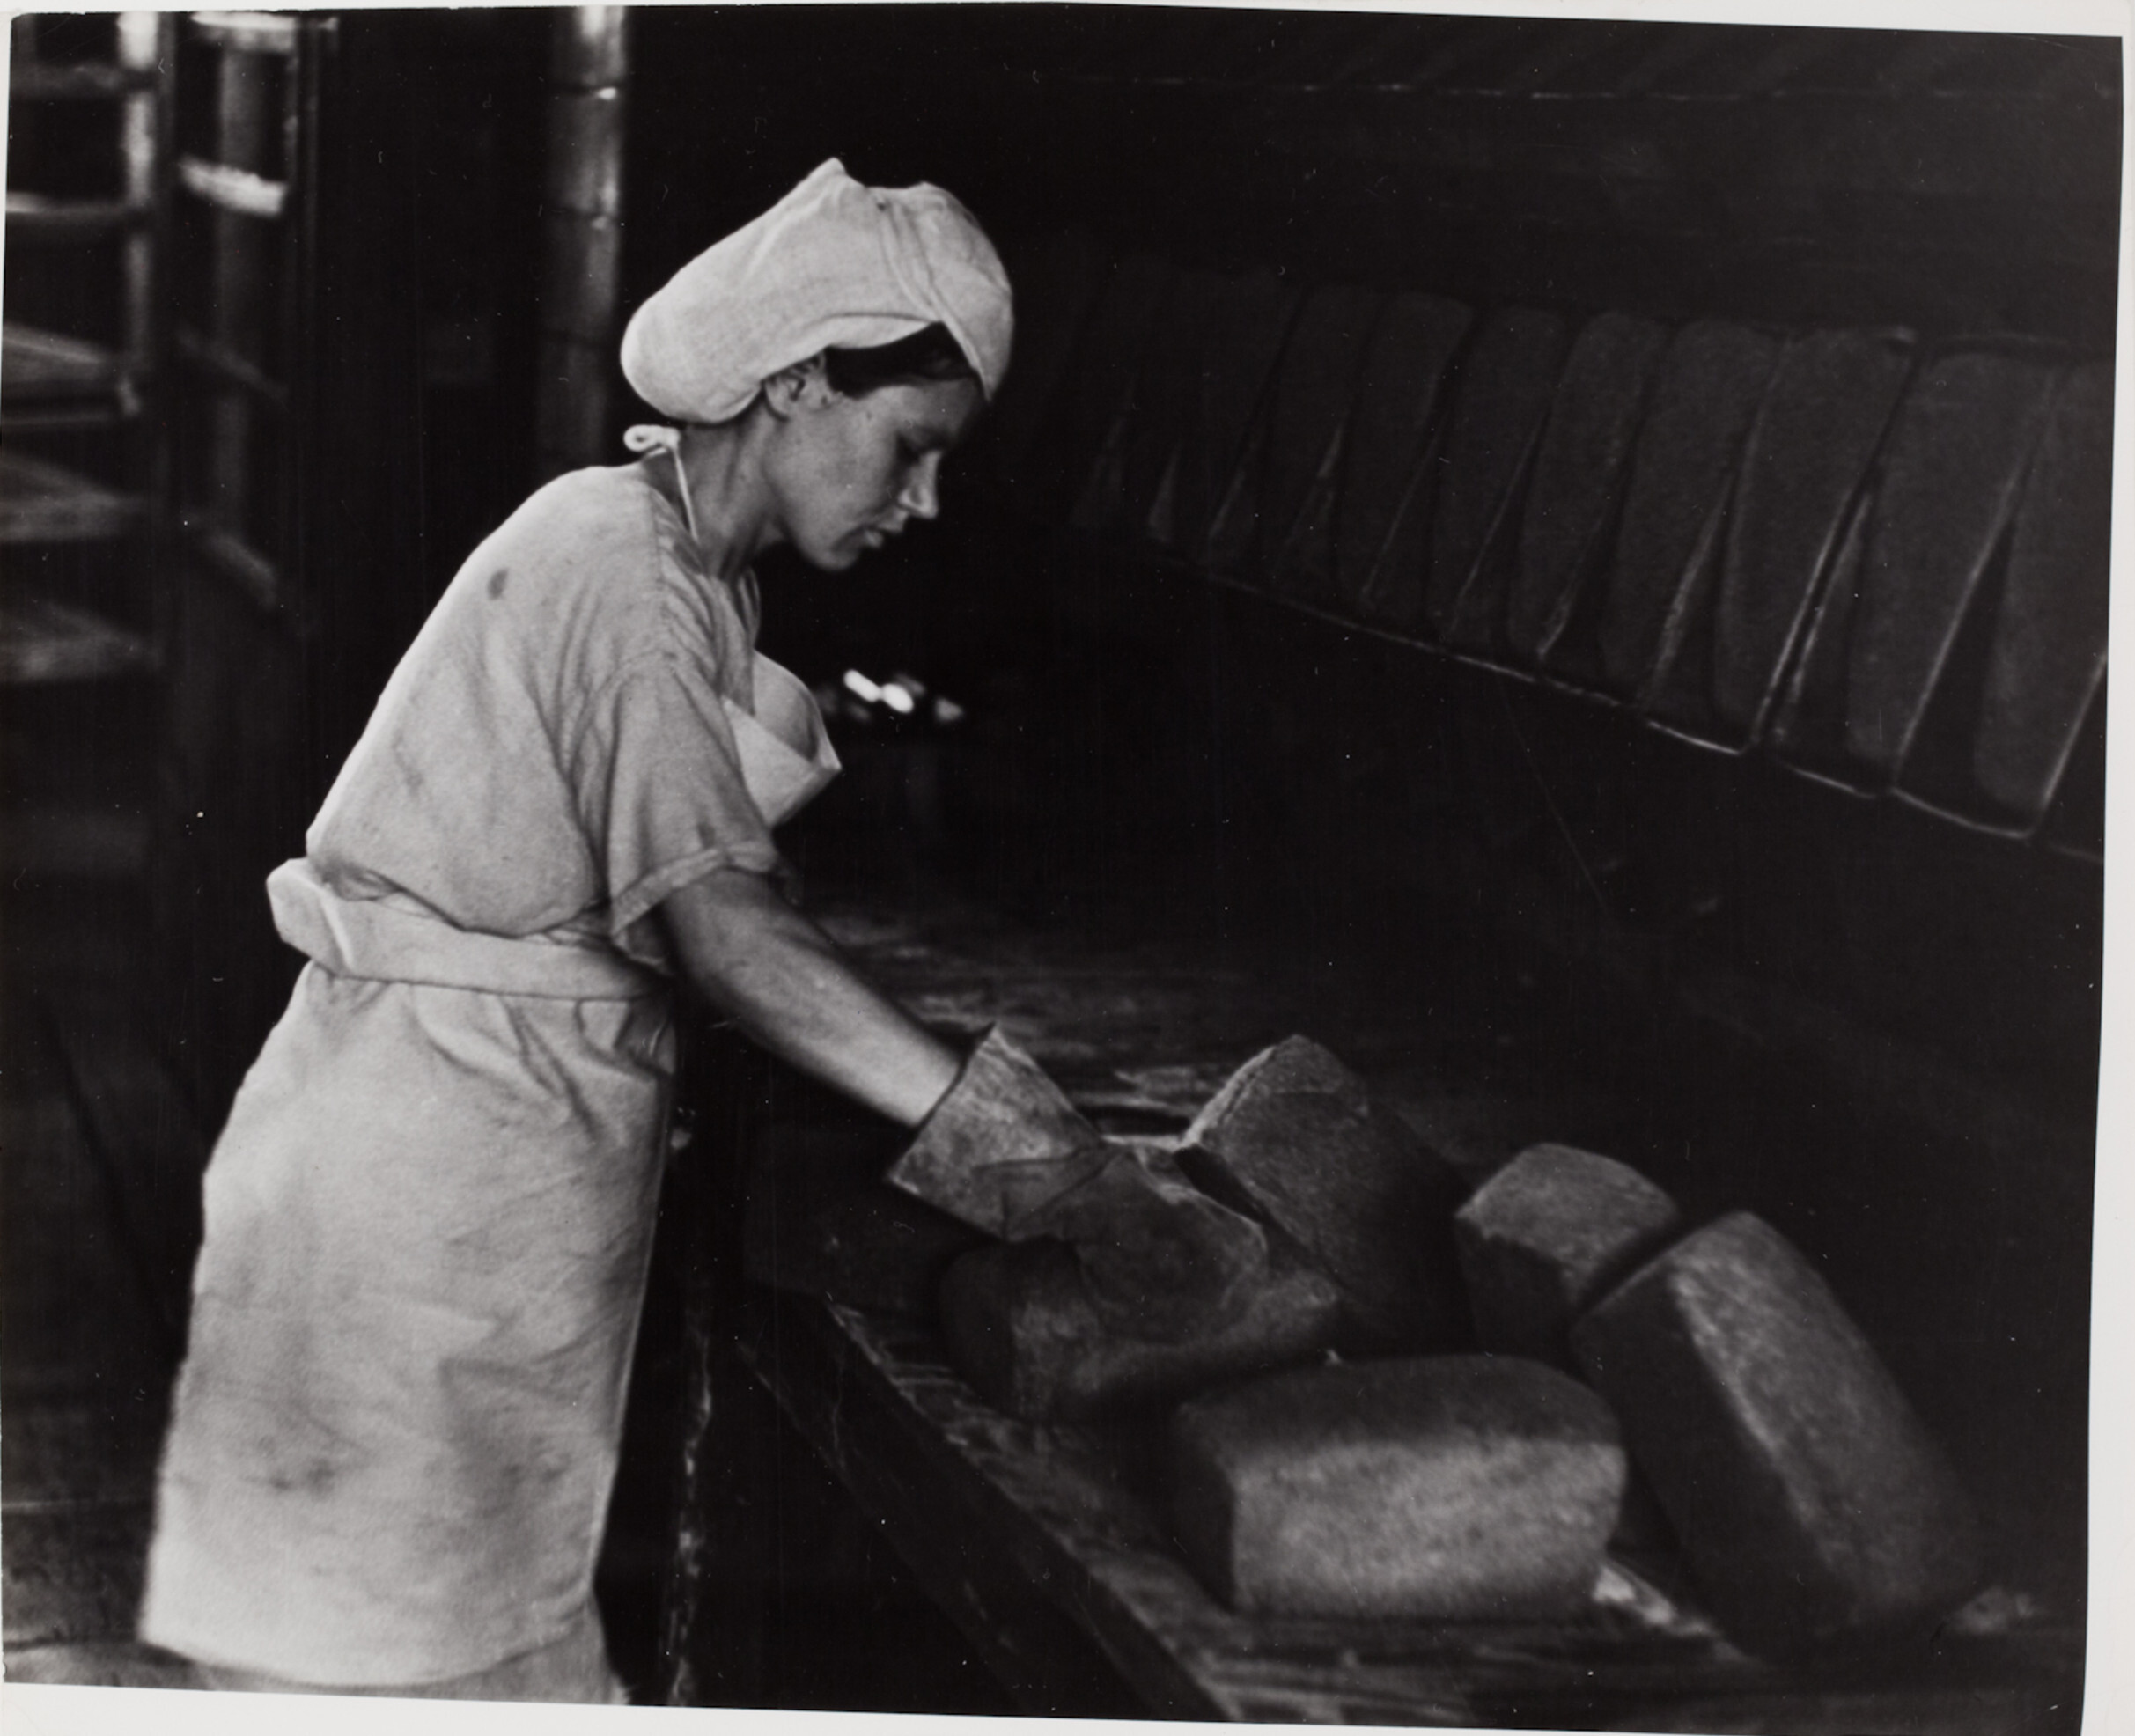 Выпечка хлеба, Киев, 1947 год. Фотограф Роберт Капа